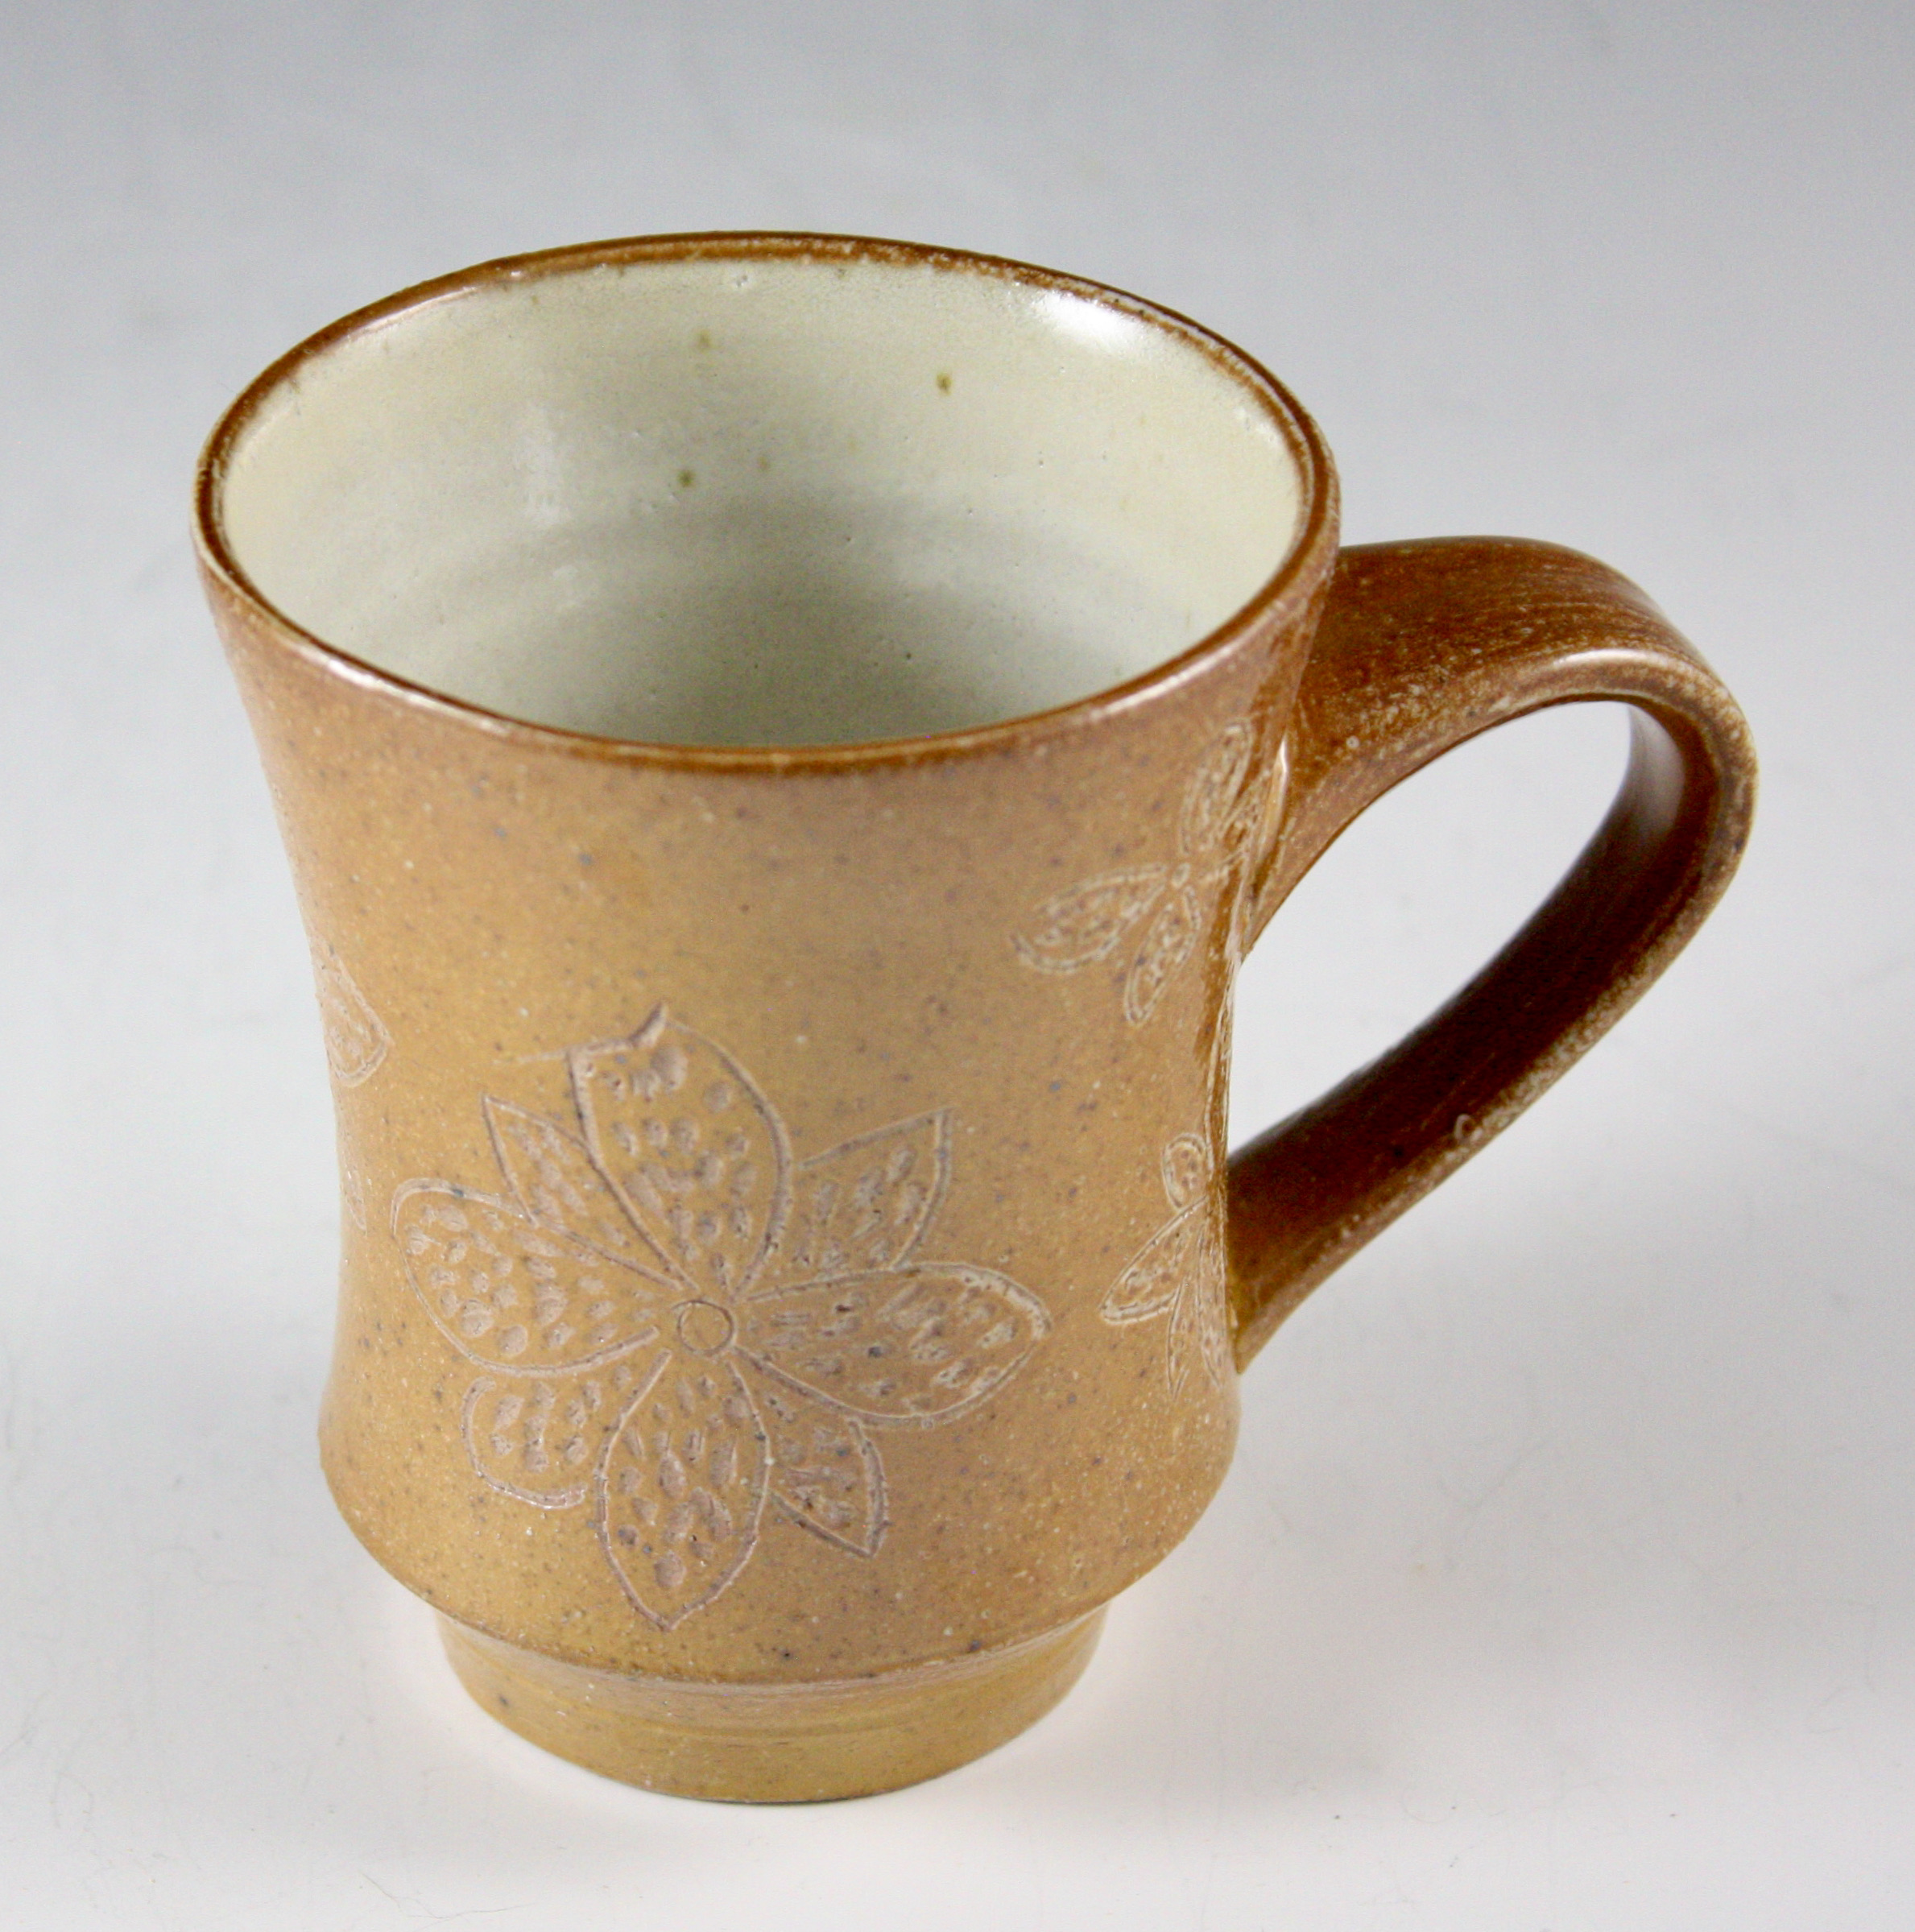 Mug with Carved Floral Design 21-13